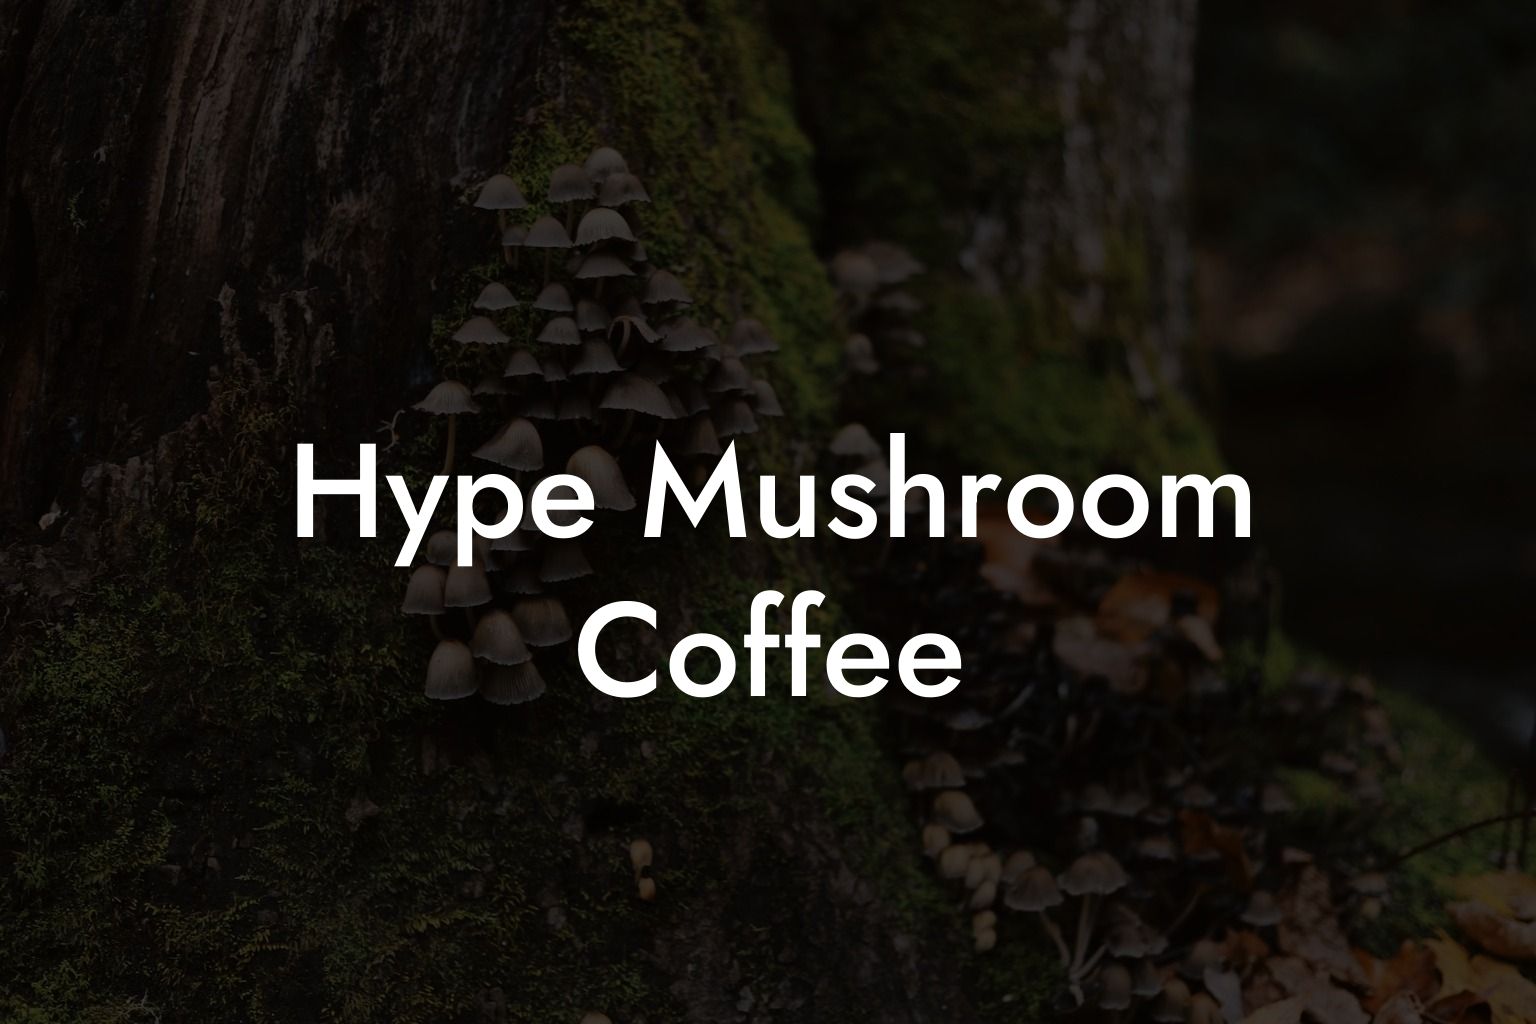 Hype Mushroom Coffee